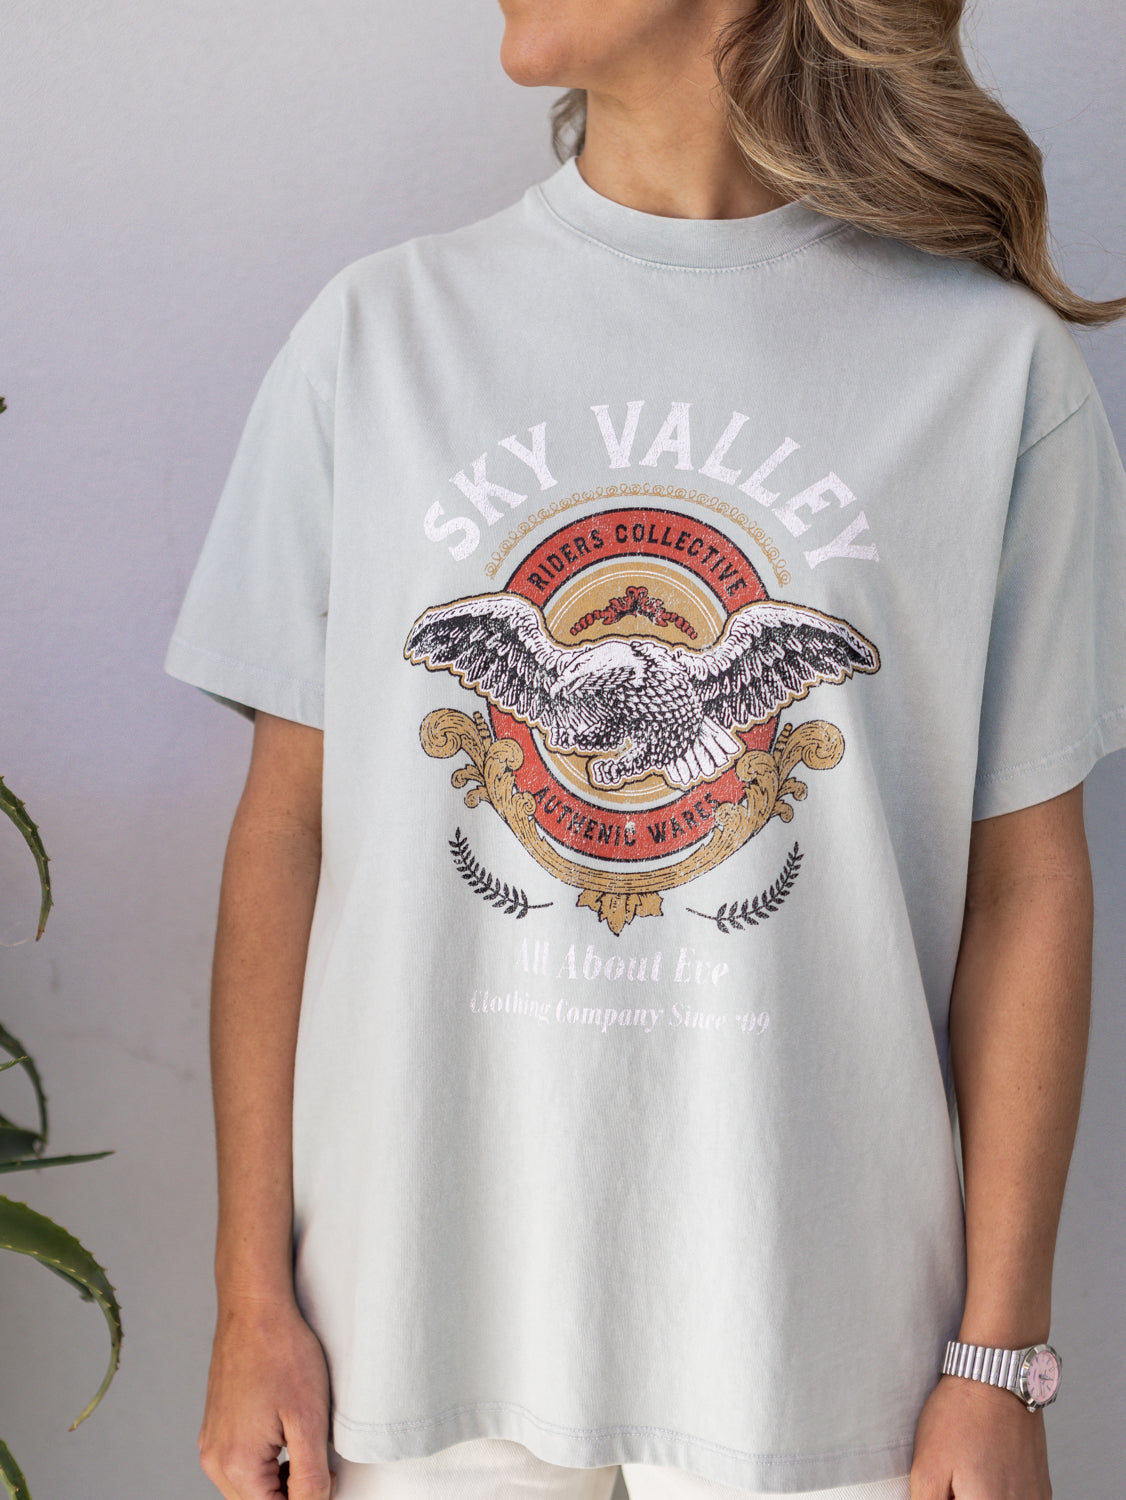 Sky Valley Tee - Teal